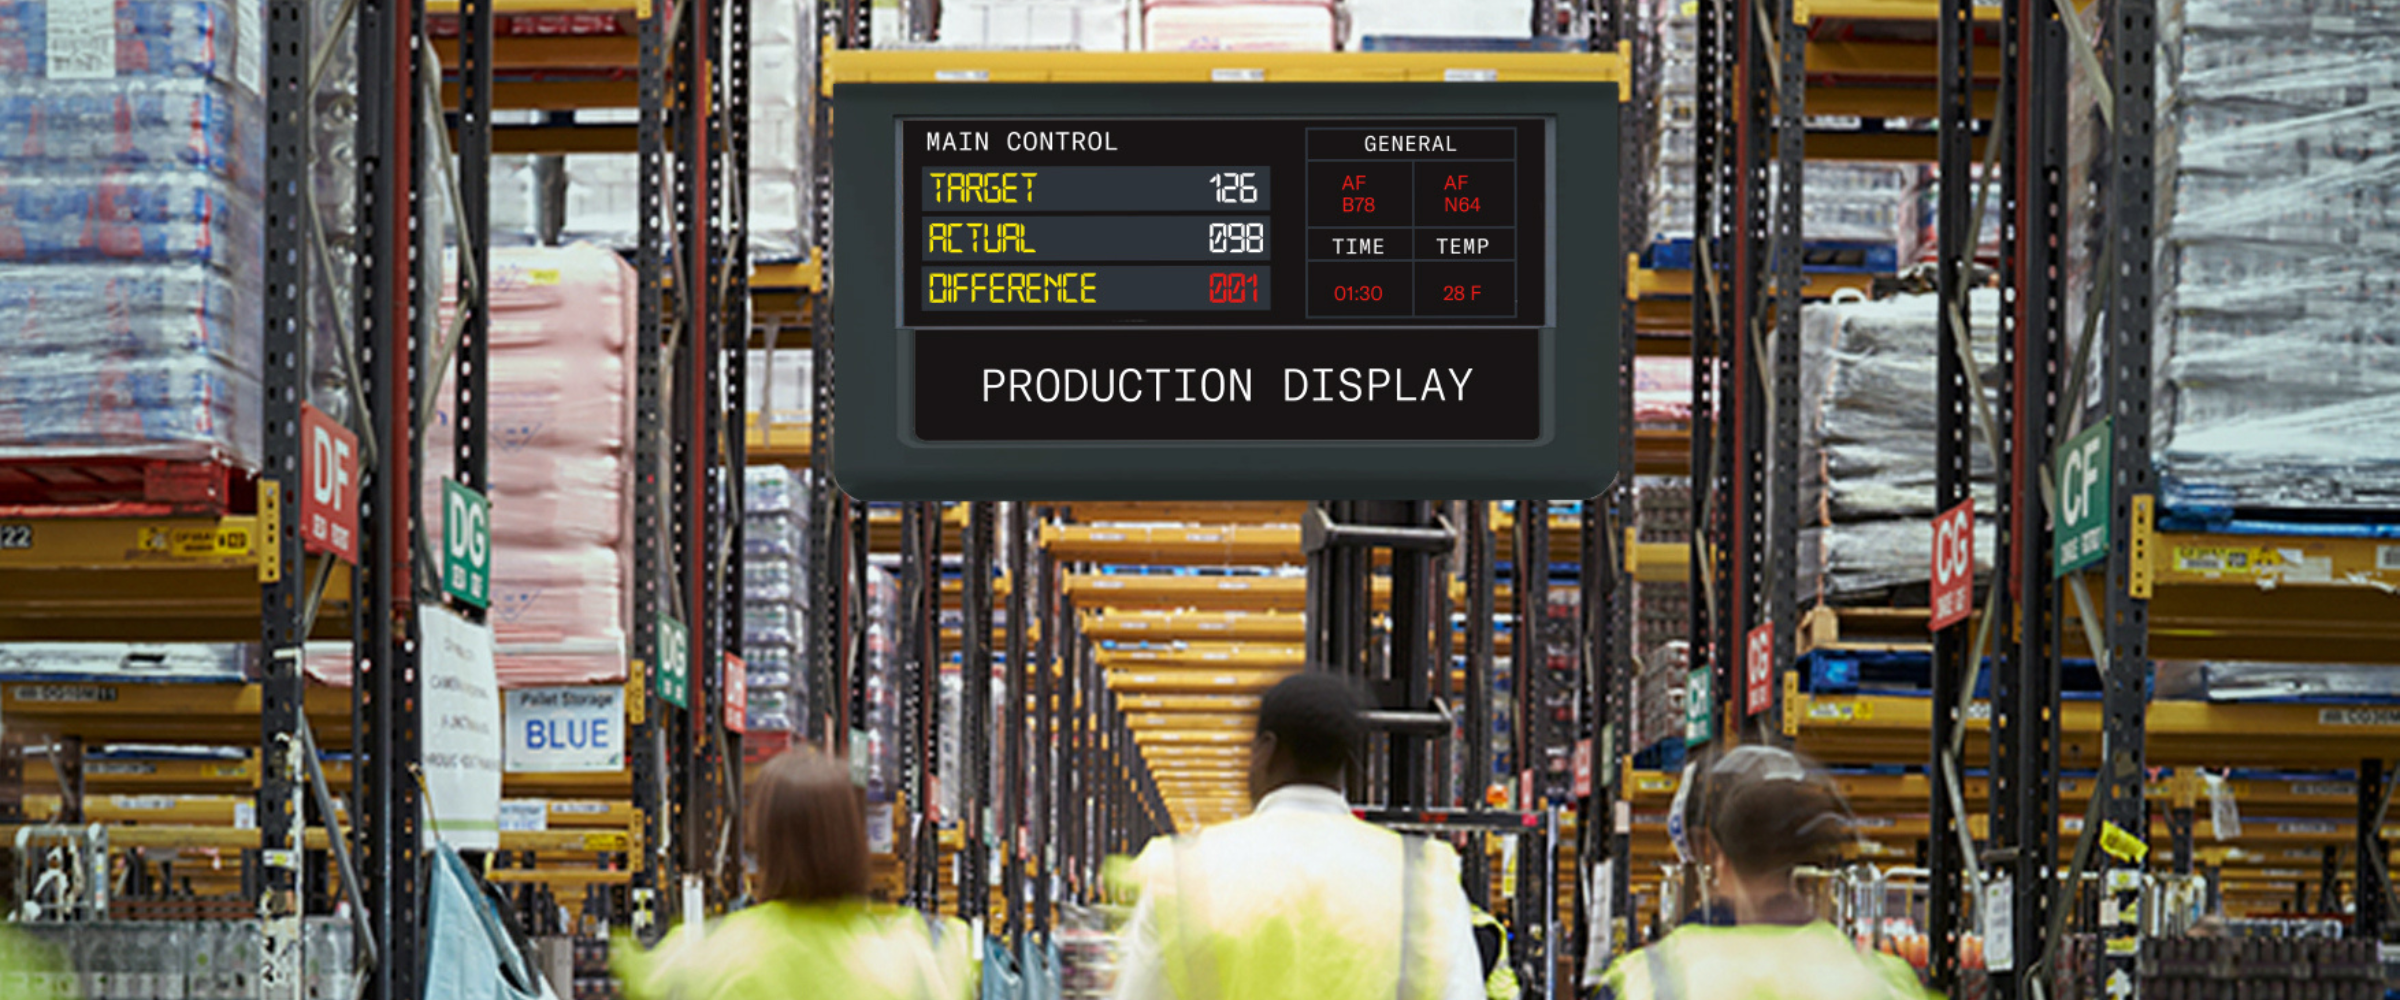 Warehouse Digital Signage